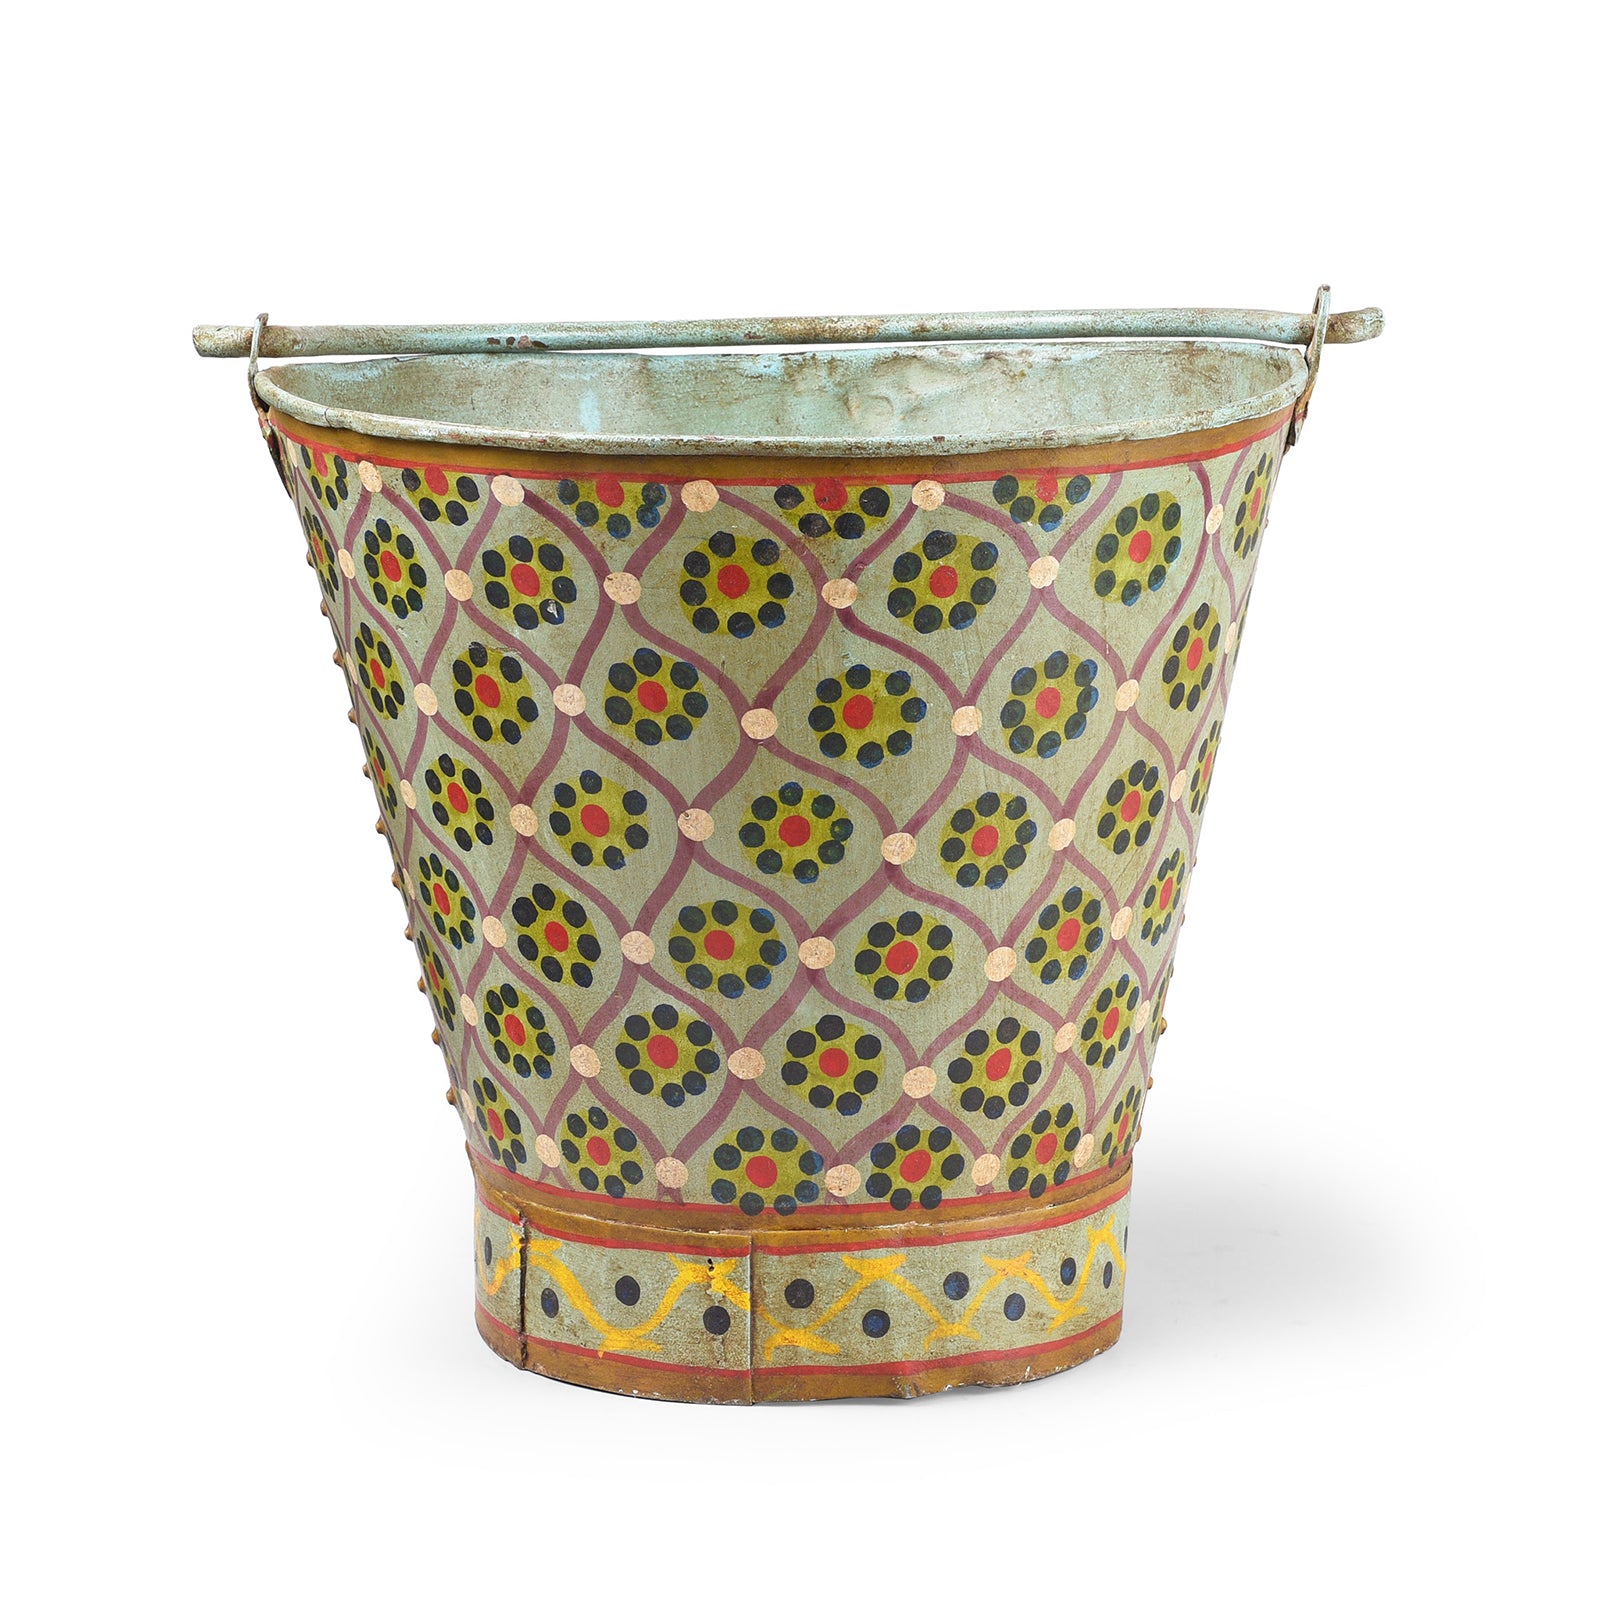 Painted Vintage Galvanized Iron Bucket - Aqua Floral | Indigo Antiques